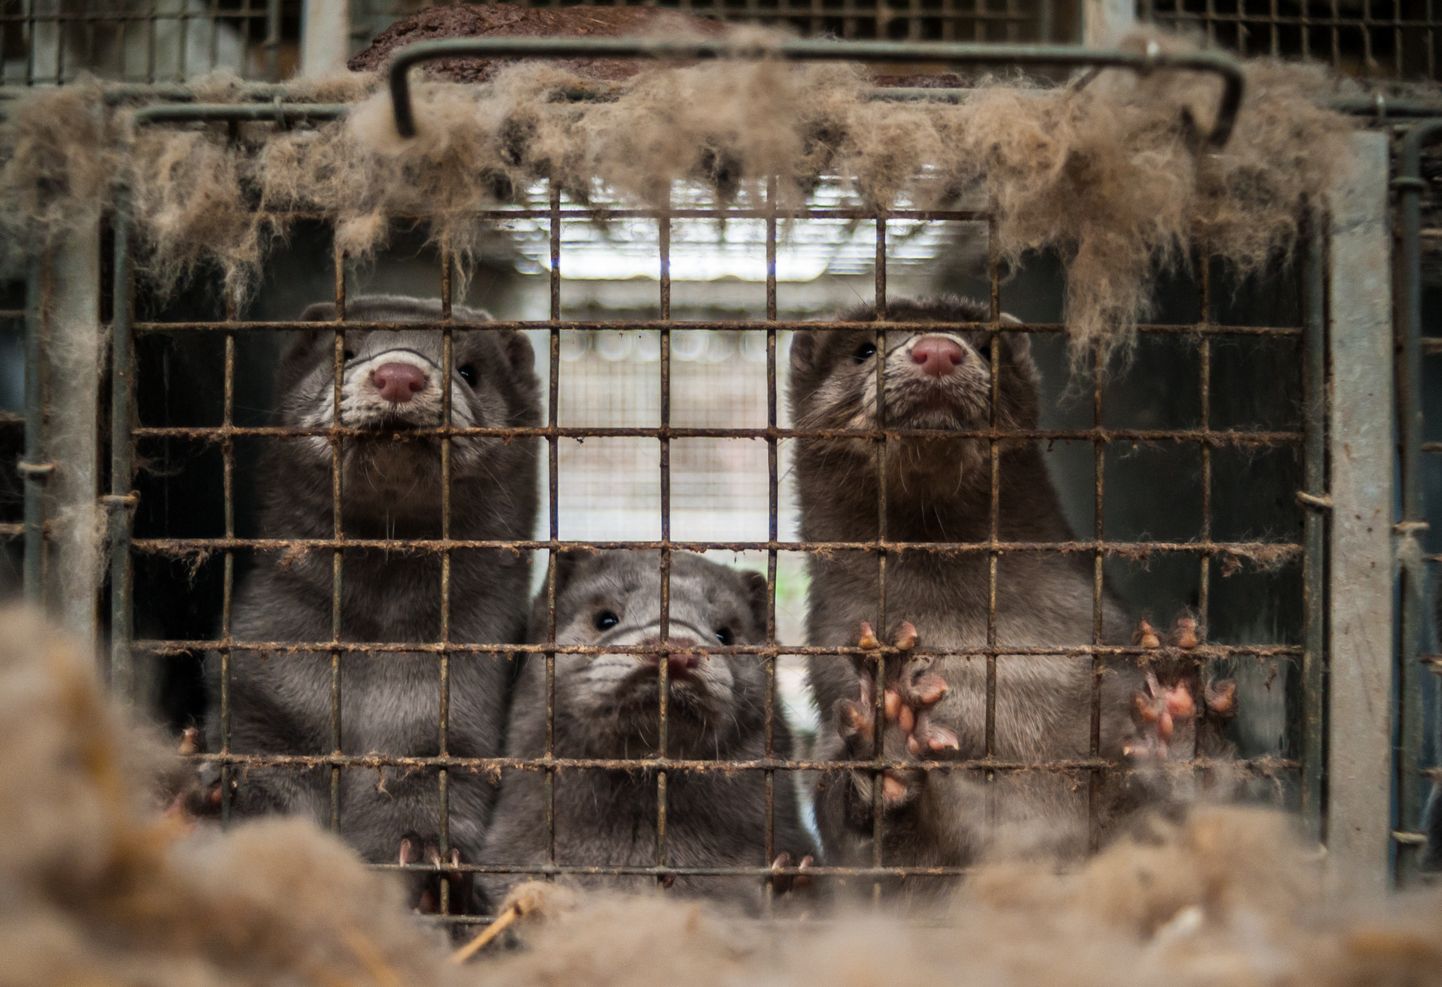 Karusloomafarmid on tänaseks keelustatud 14 Euroopa riigis